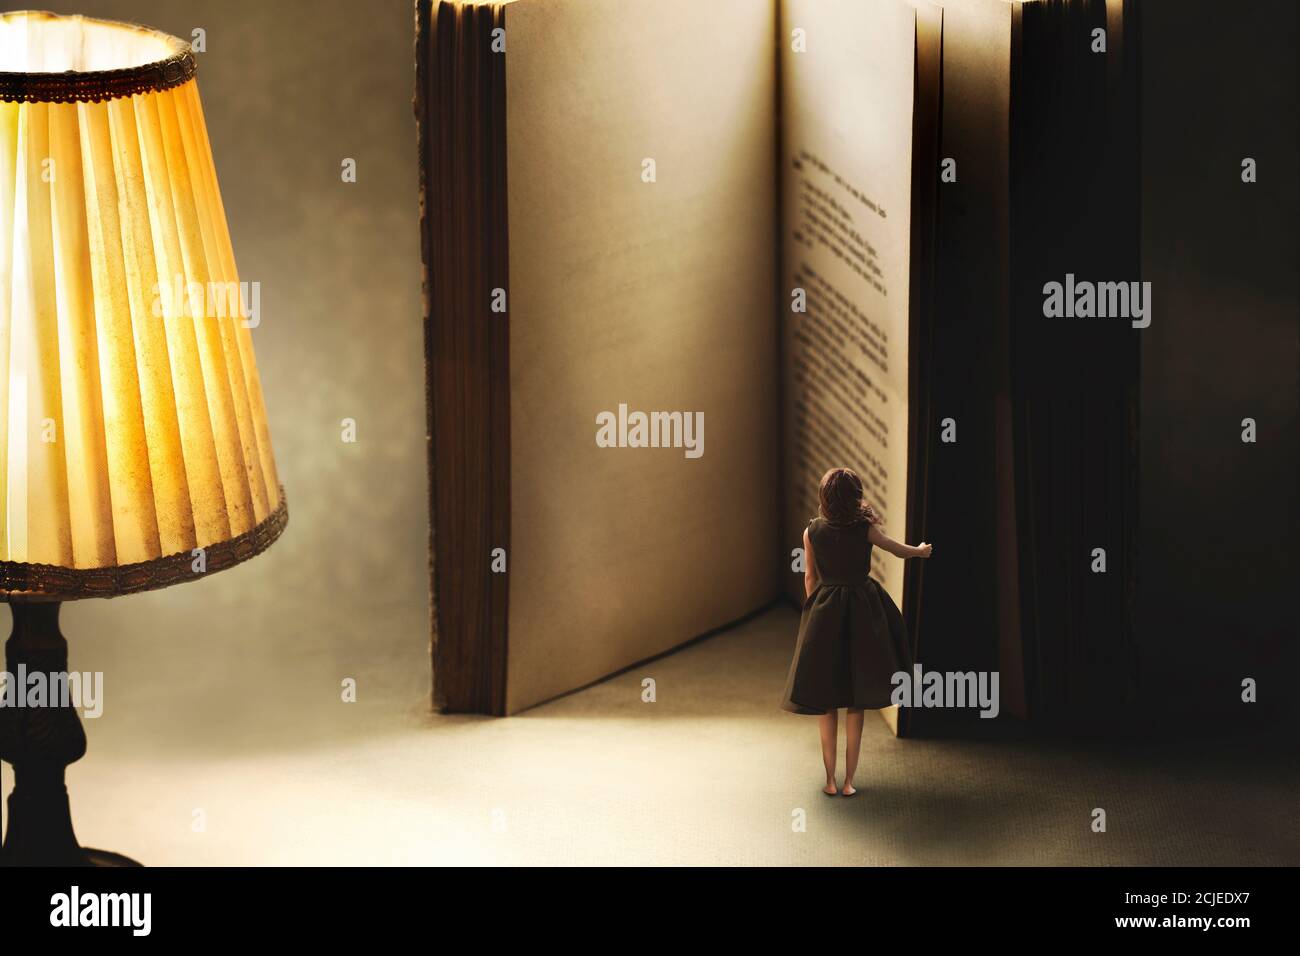 momento surrealista de una mujer abriendo las páginas en blanco de un libro gigante, concepto del conocimiento Foto de stock